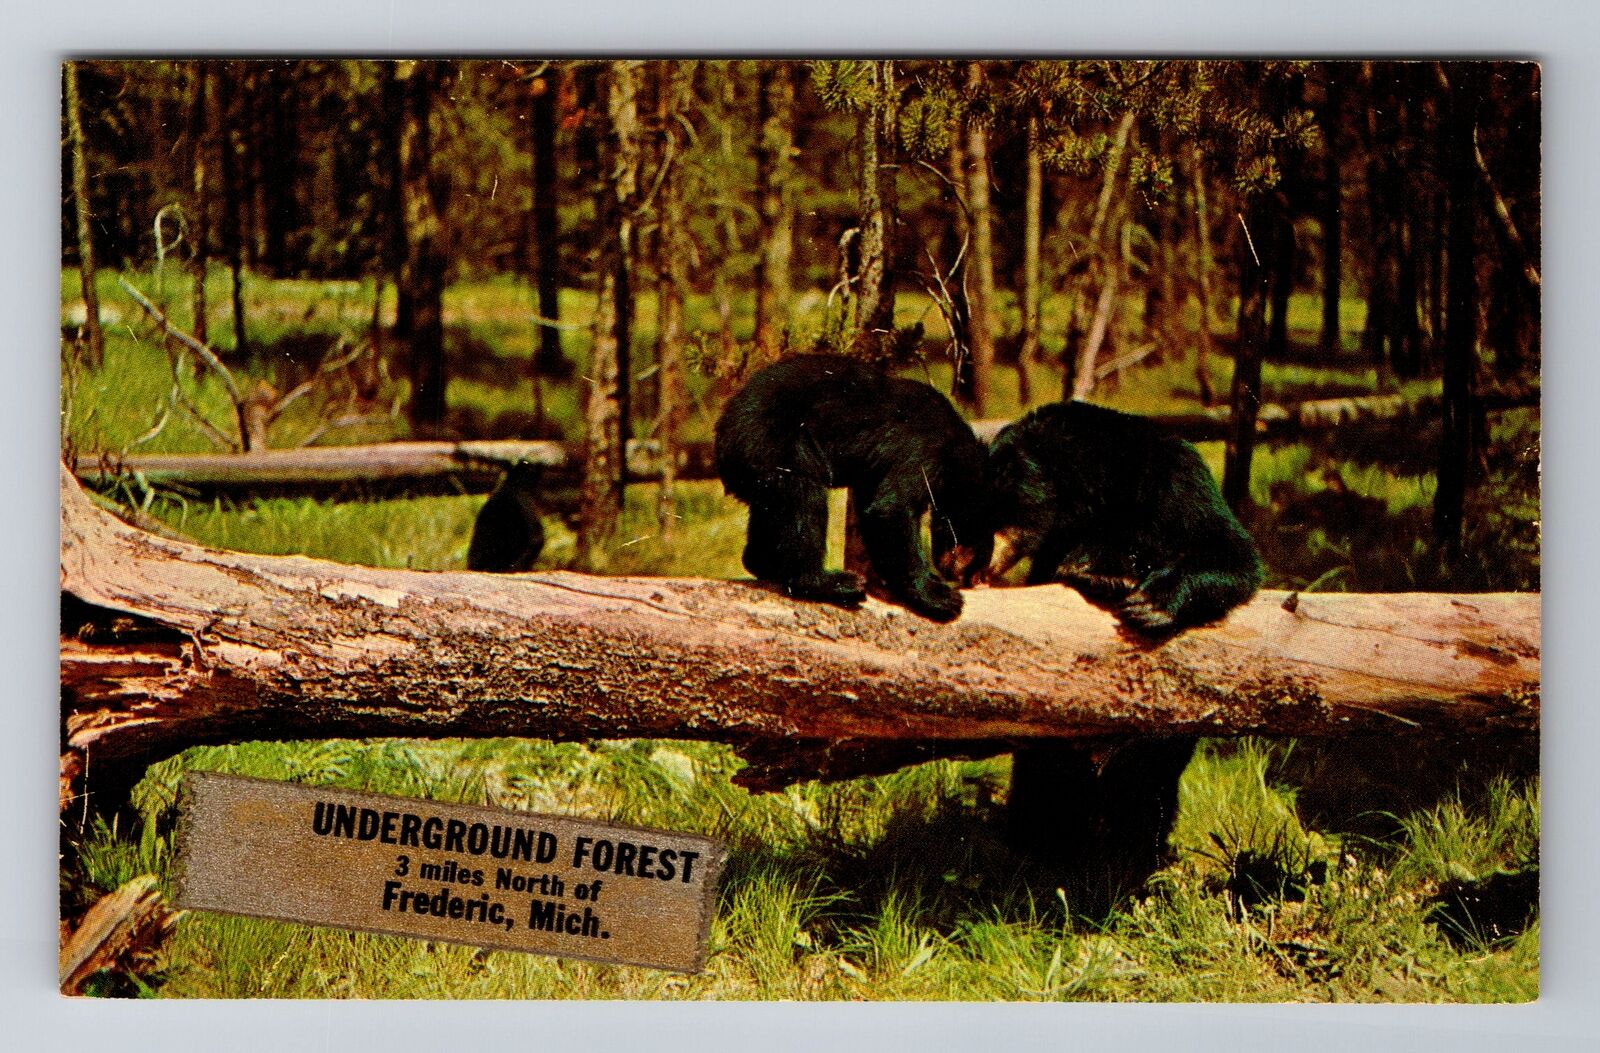 Frederic MI-Michigan, Underground Forest, Antique, Vintage Souvenir Postcard